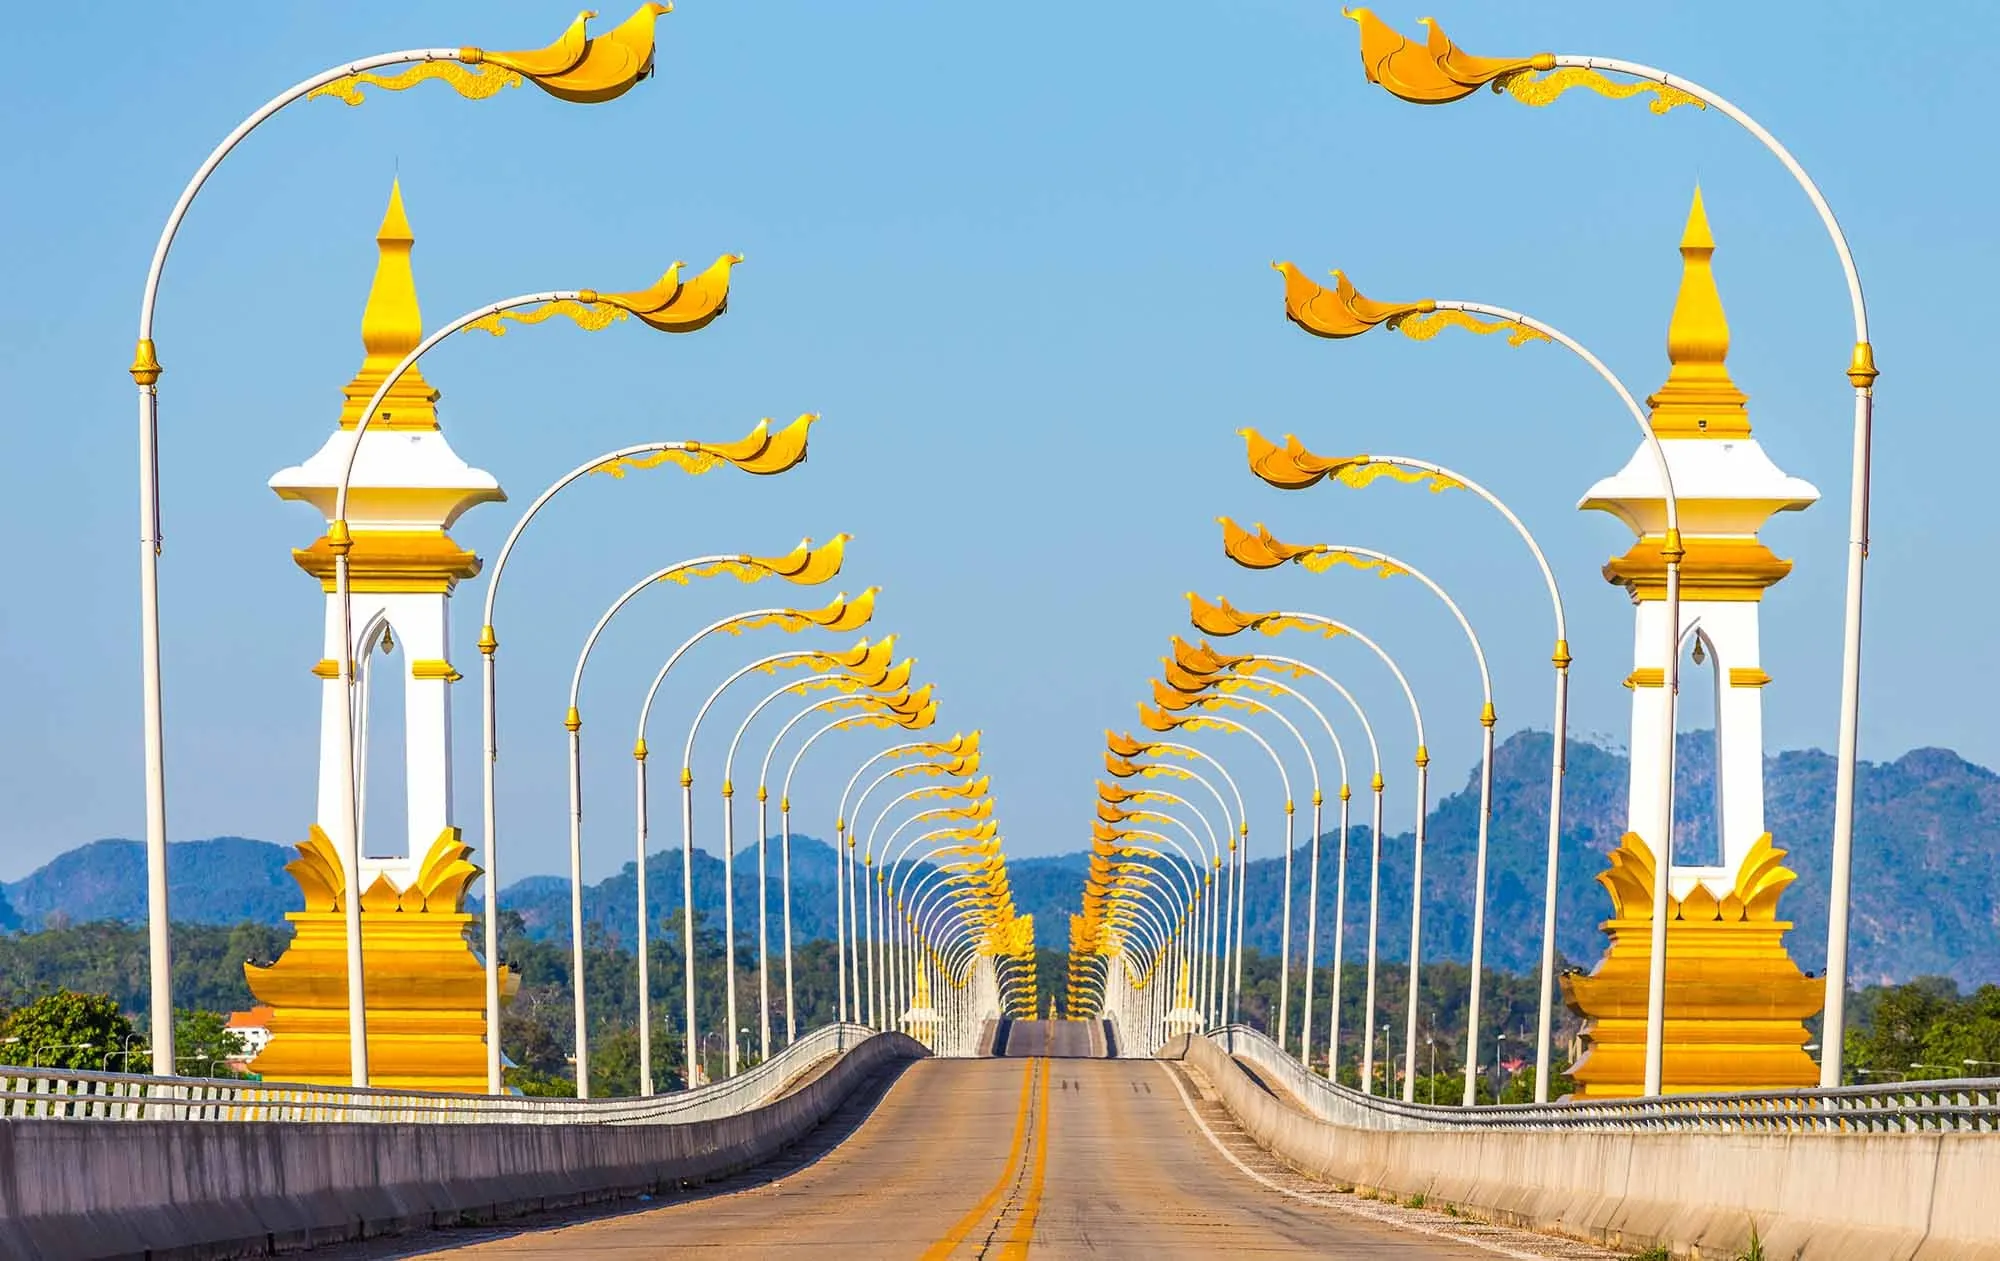 สะพานมิตรภาพไทย-ลาว - นครพนม (แหล่งที่มาของภาพ: thailandtourismdirectory)